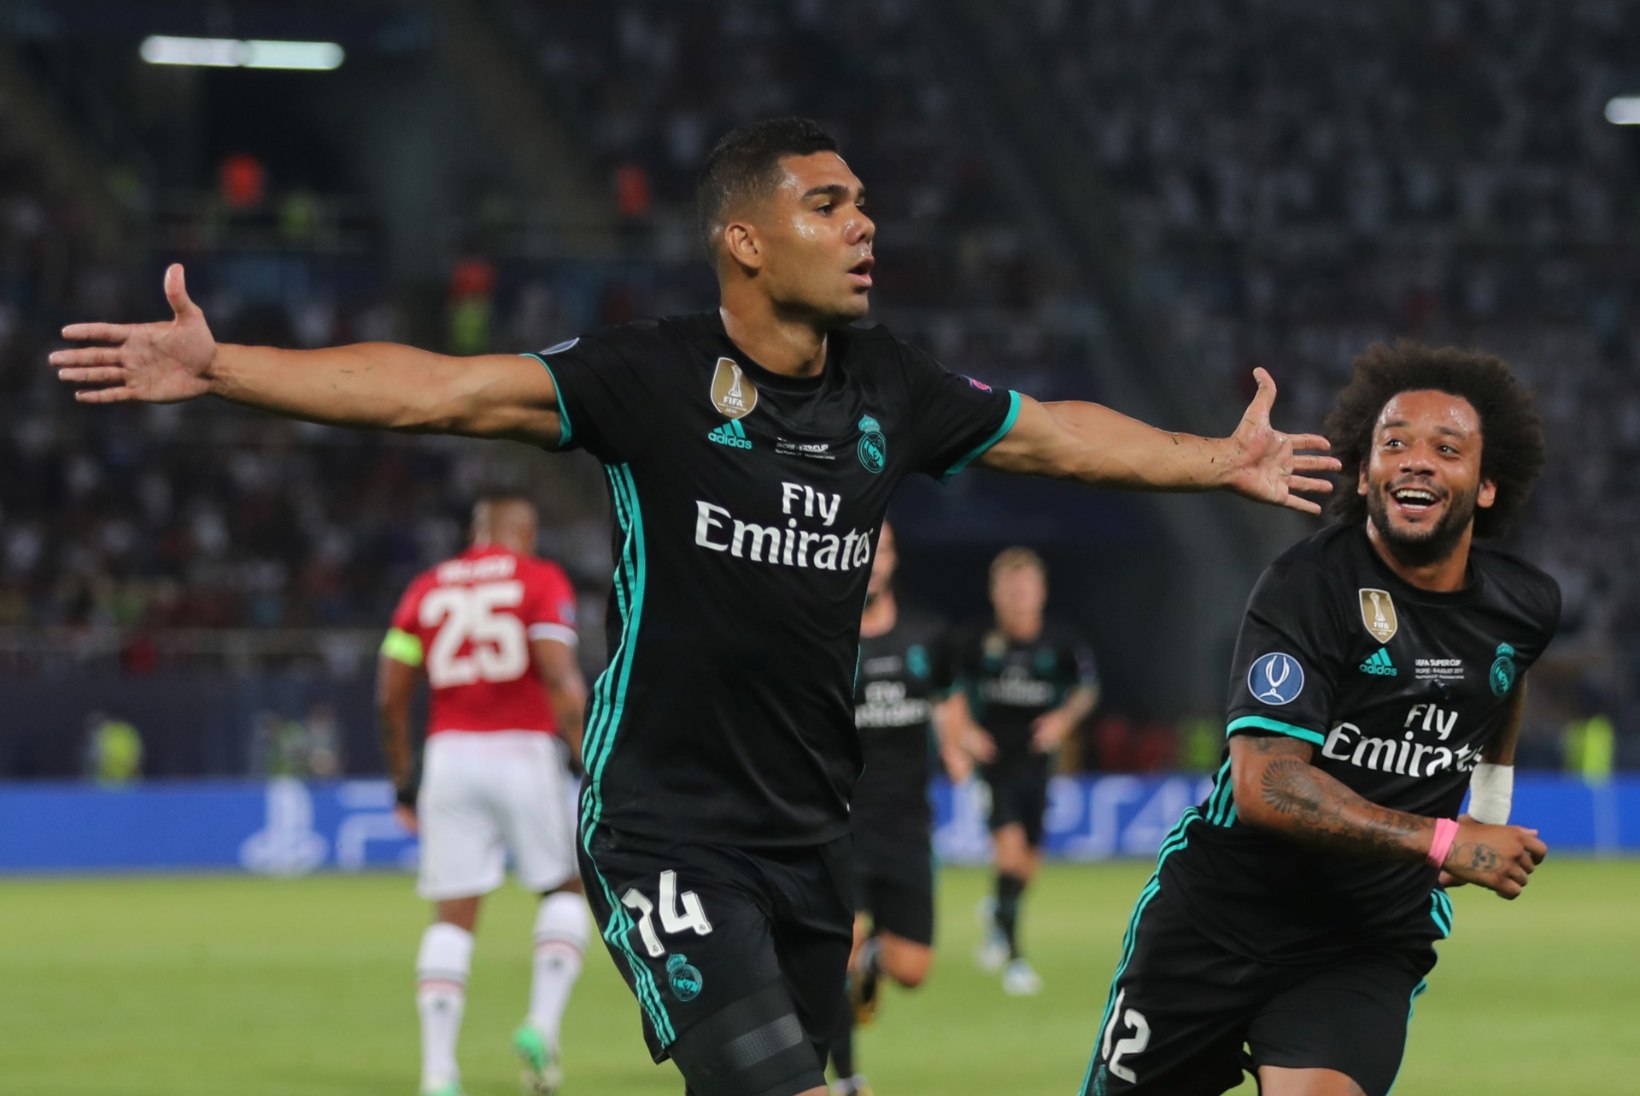 GALERII | Madridi Real alistas Manchester Unitedi ja võitis järjekordse karika